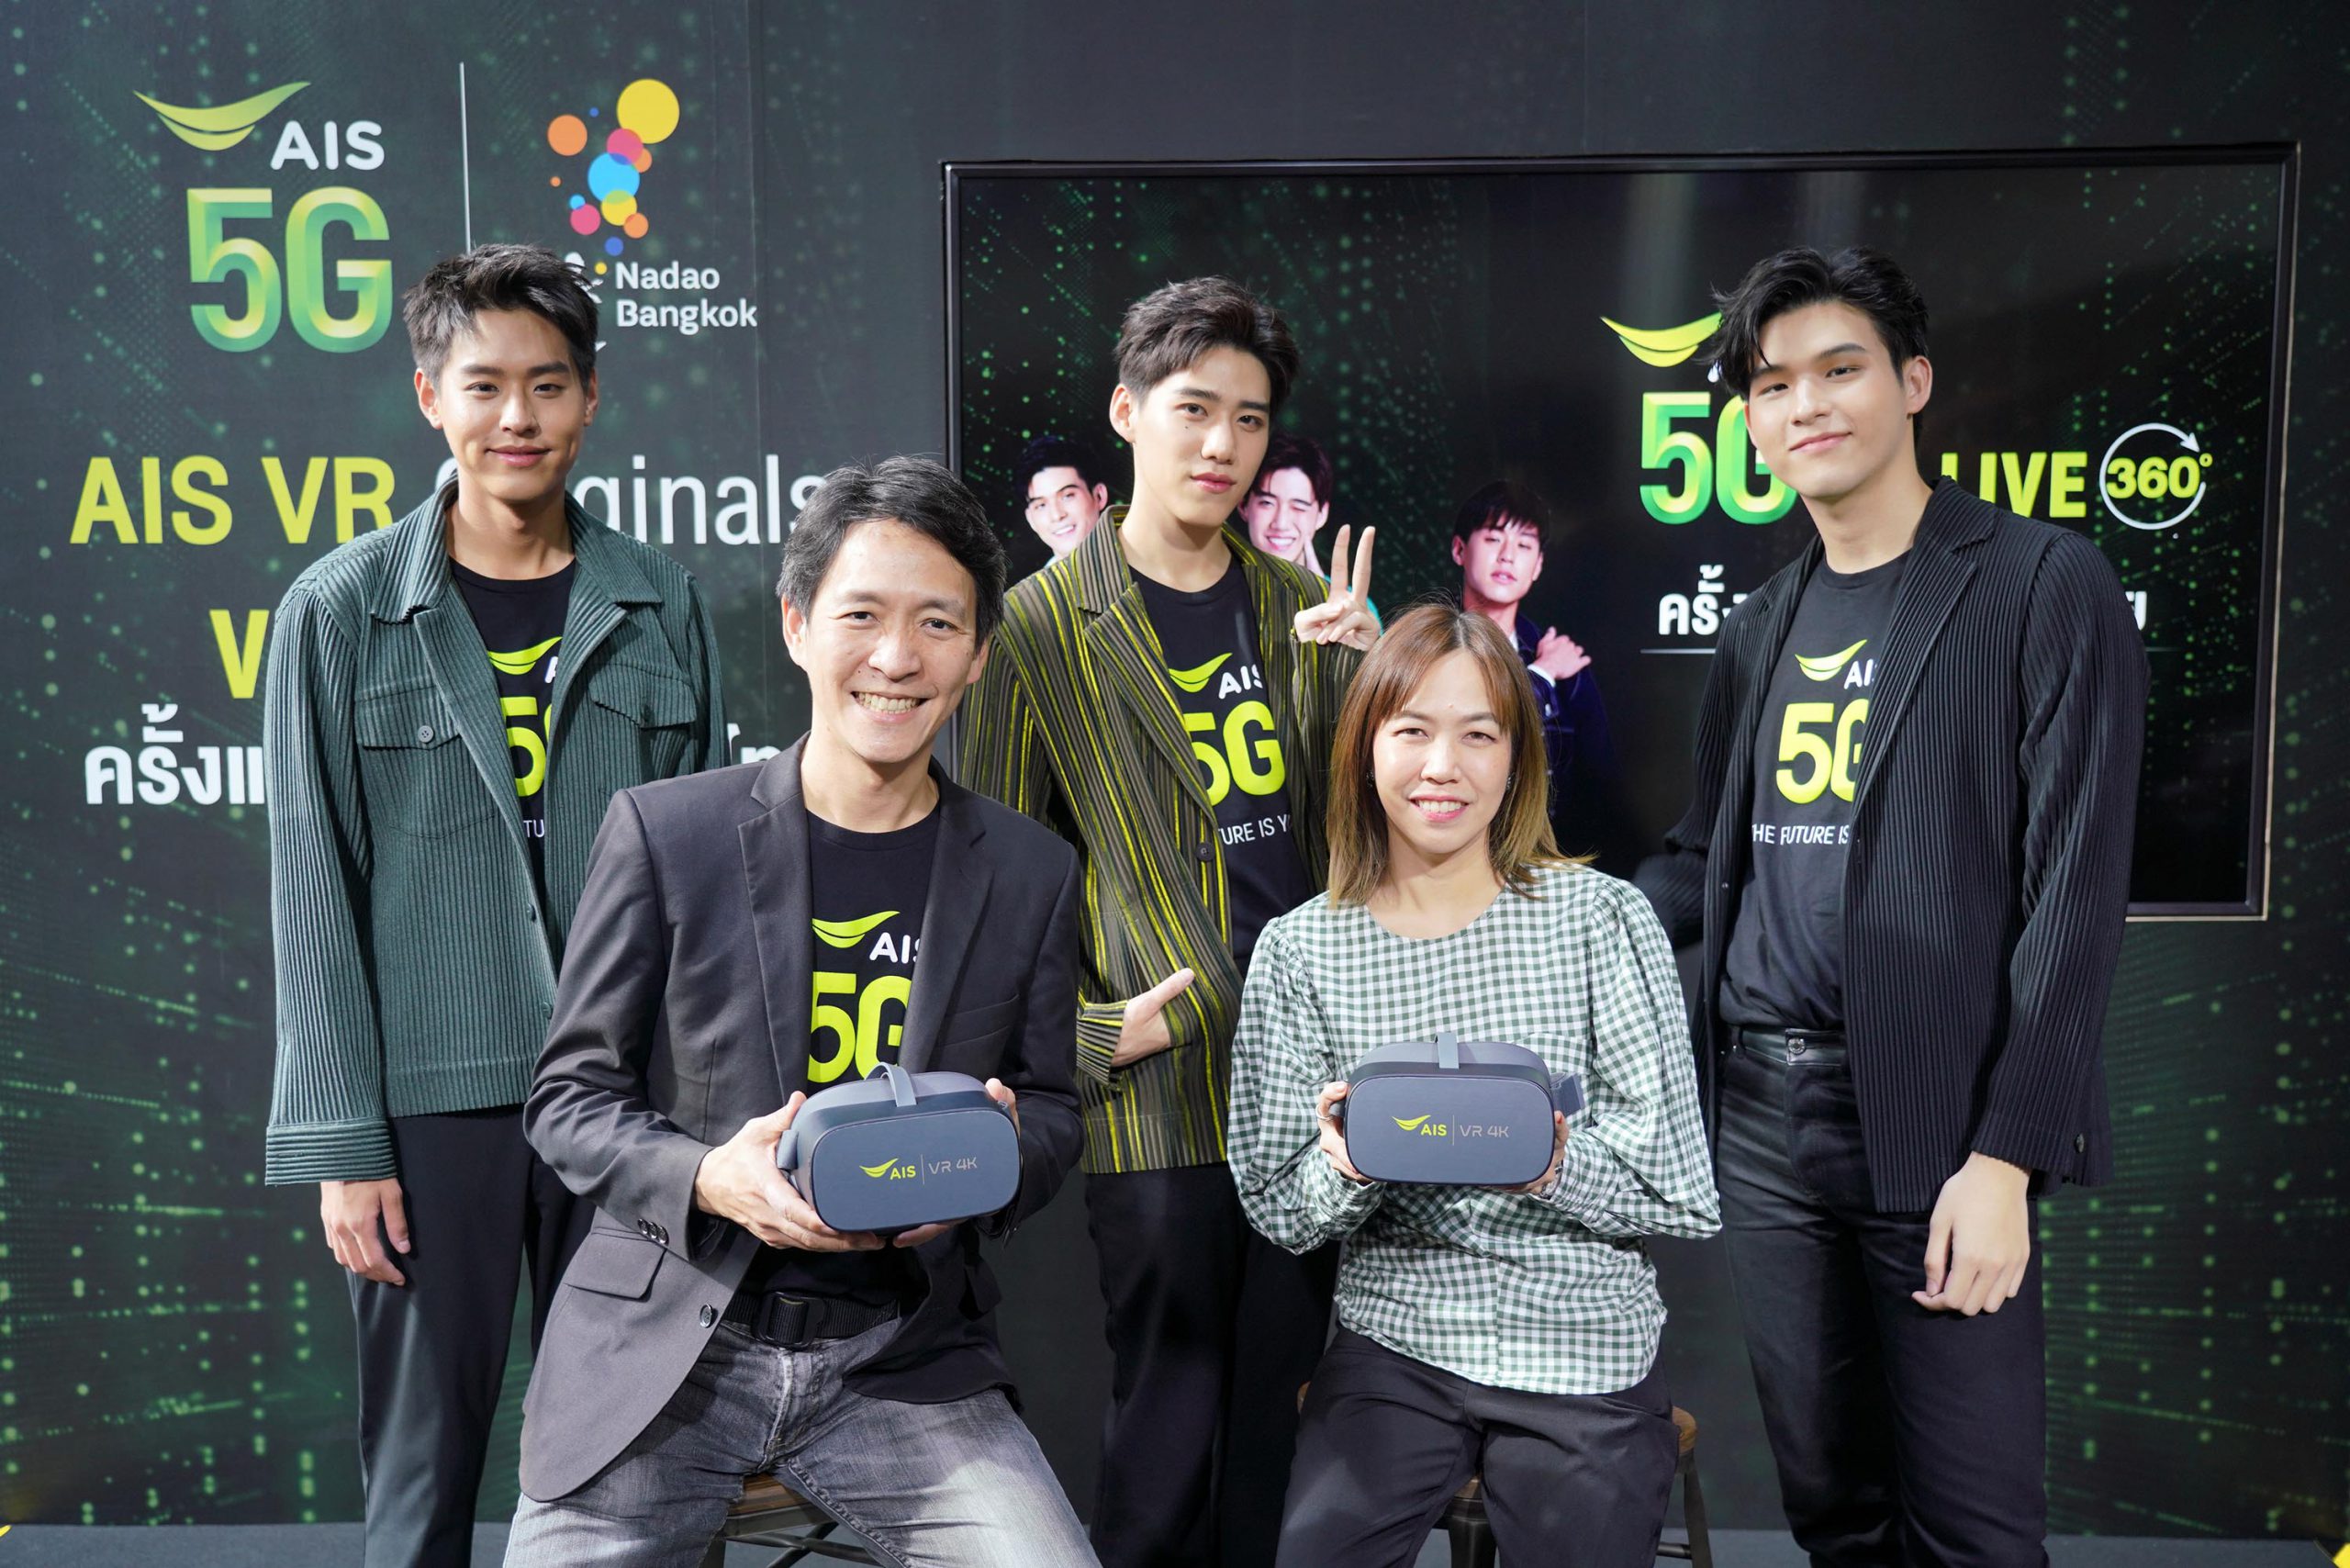 AIS โชว์ล้ำ จัดจริง “The First 5G VR live streaming” รายแรกในไทย ผนึก นาดาวฯ ดึงศิลปินเรียกเสียงกรี๊ด กระหึ่มแฟนมีท วิถีนิวนอร์มอล รุกเปิดตลาด VR Content พลิกโฉมอุตสาหกรรมบันเทิงยุค 5G